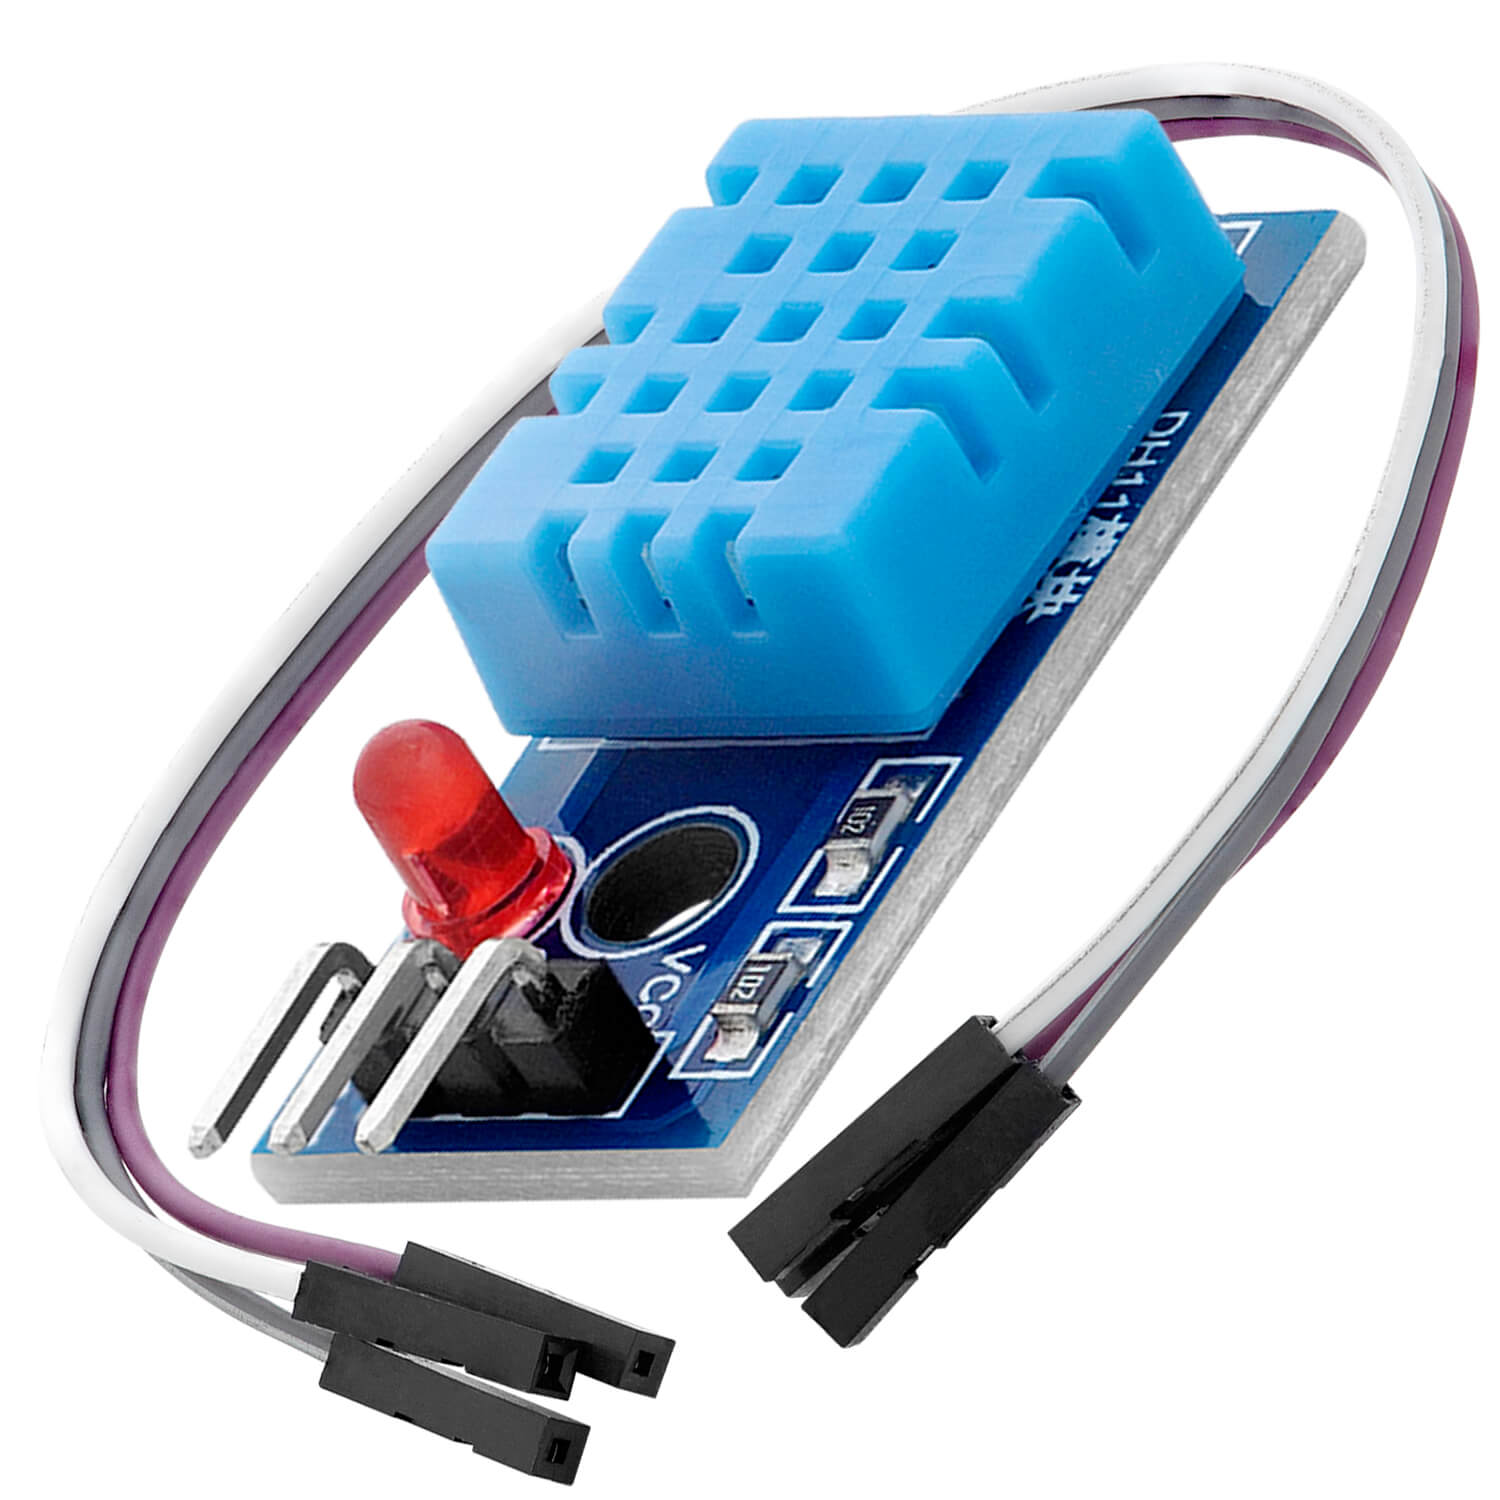 DHT11 AM2302 Sensore di temperatura e umidità con Jumper Wire Cavi  compatibile con Arduino e Raspberry Pi